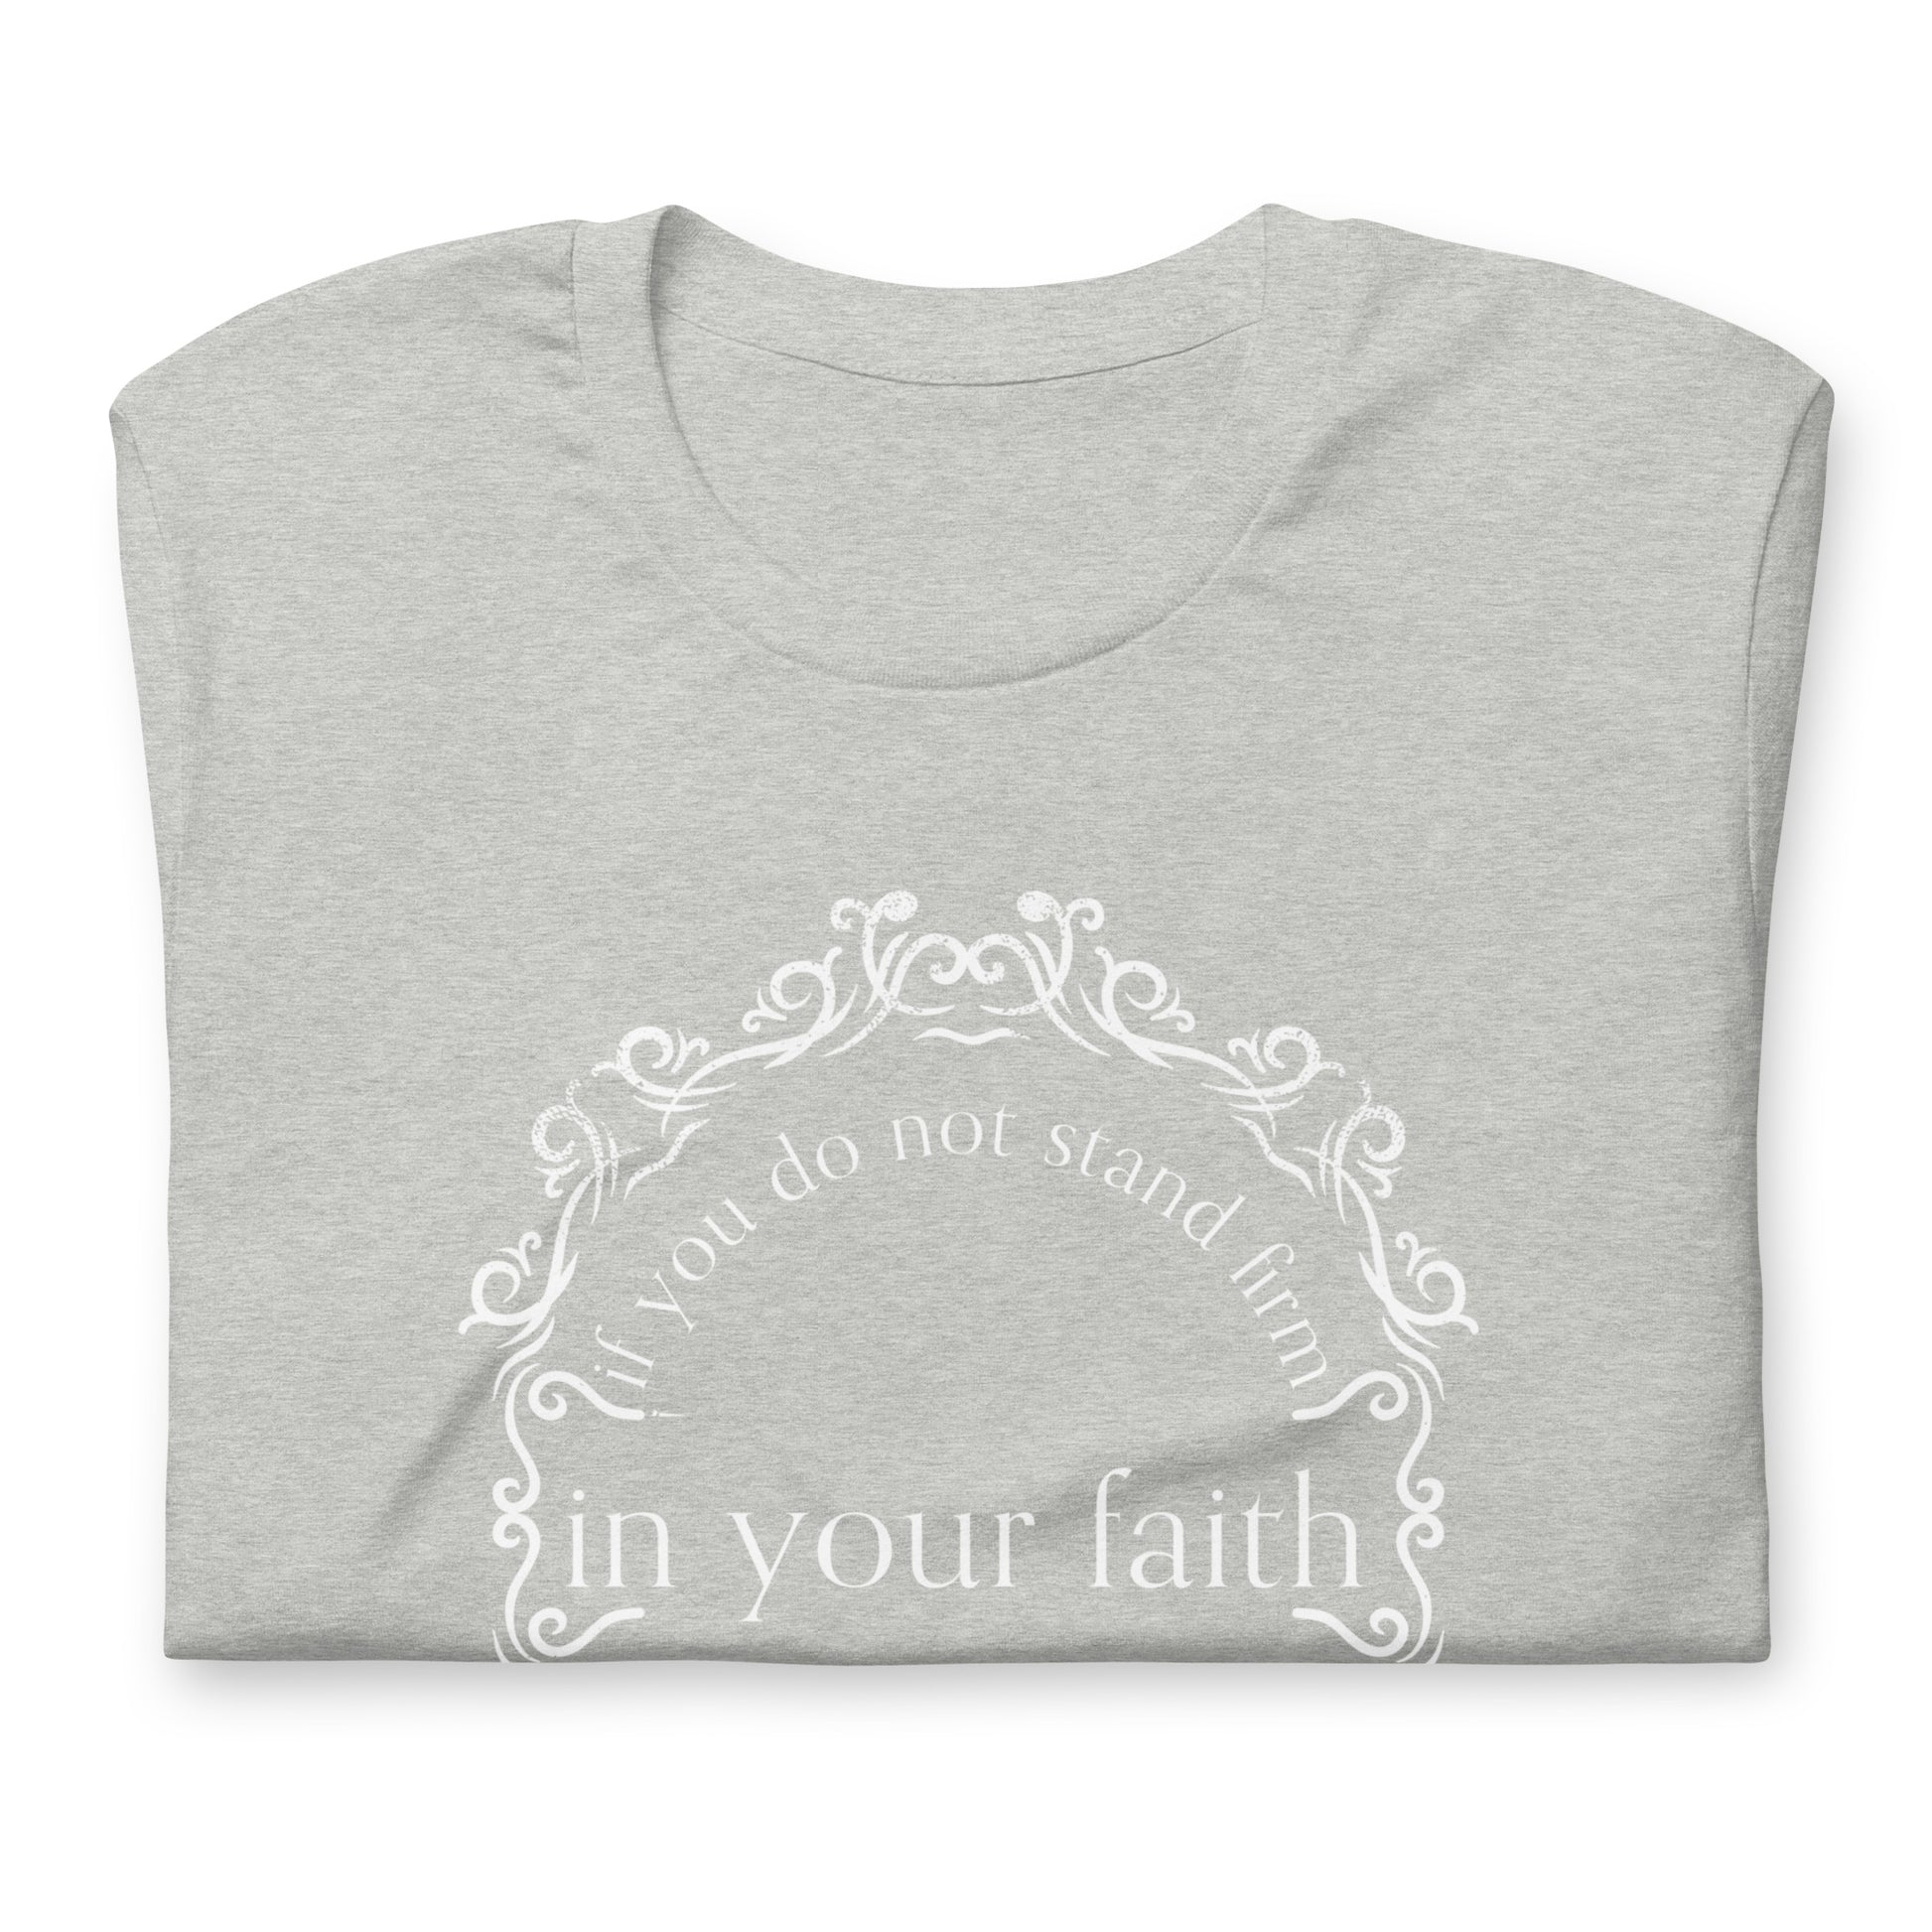 Isaiah 7:9 Ladies' Short Sleeve T-shirt athletic heather folded